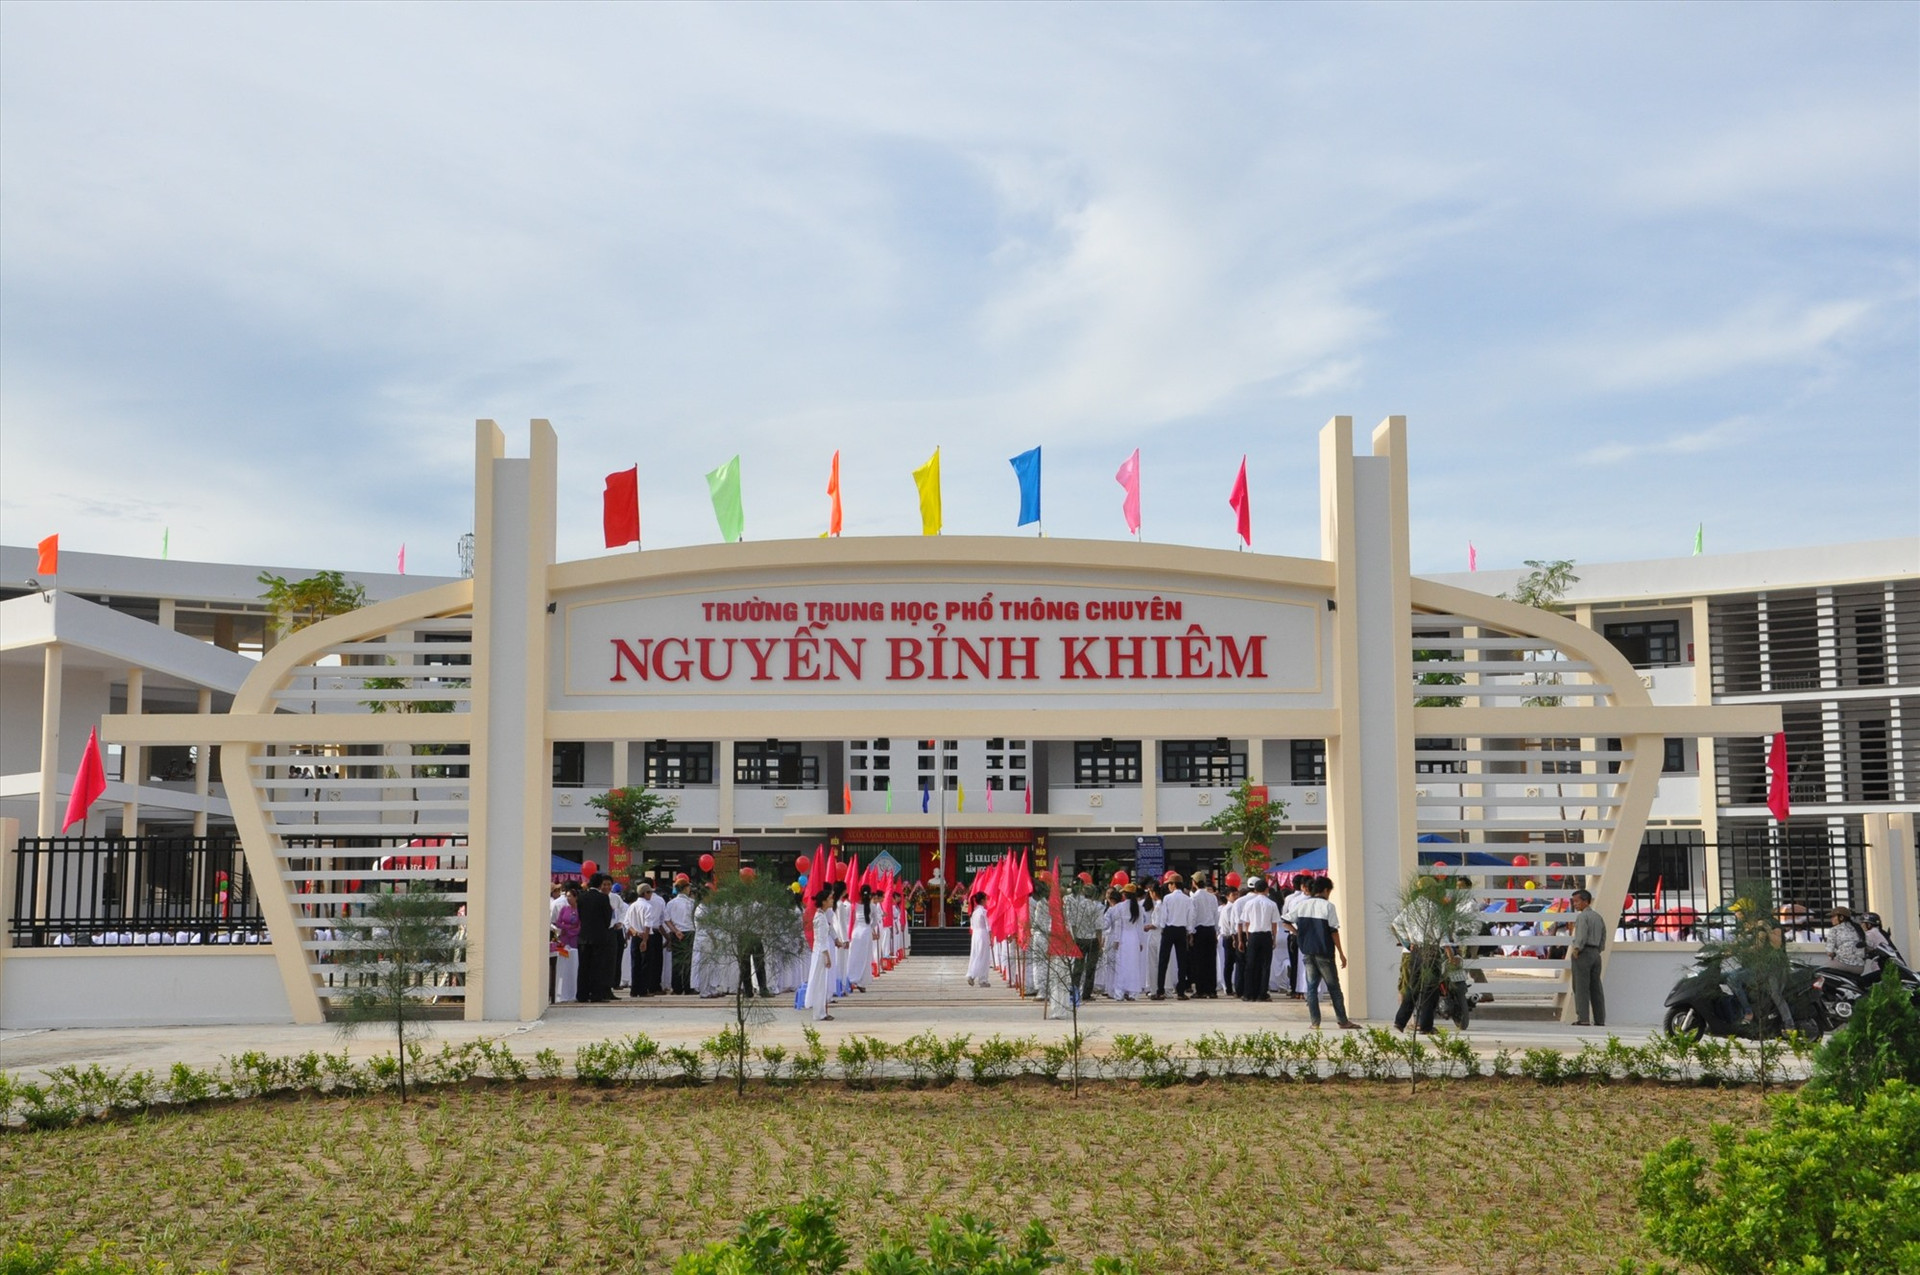 Sau 20 năm thành lập, Trường THPT chuyên Nguyễn Bỉnh Khiêm đã để lại dấu ấn trong đào tạo nhân tài cho đất nước. Ảnh: X.P